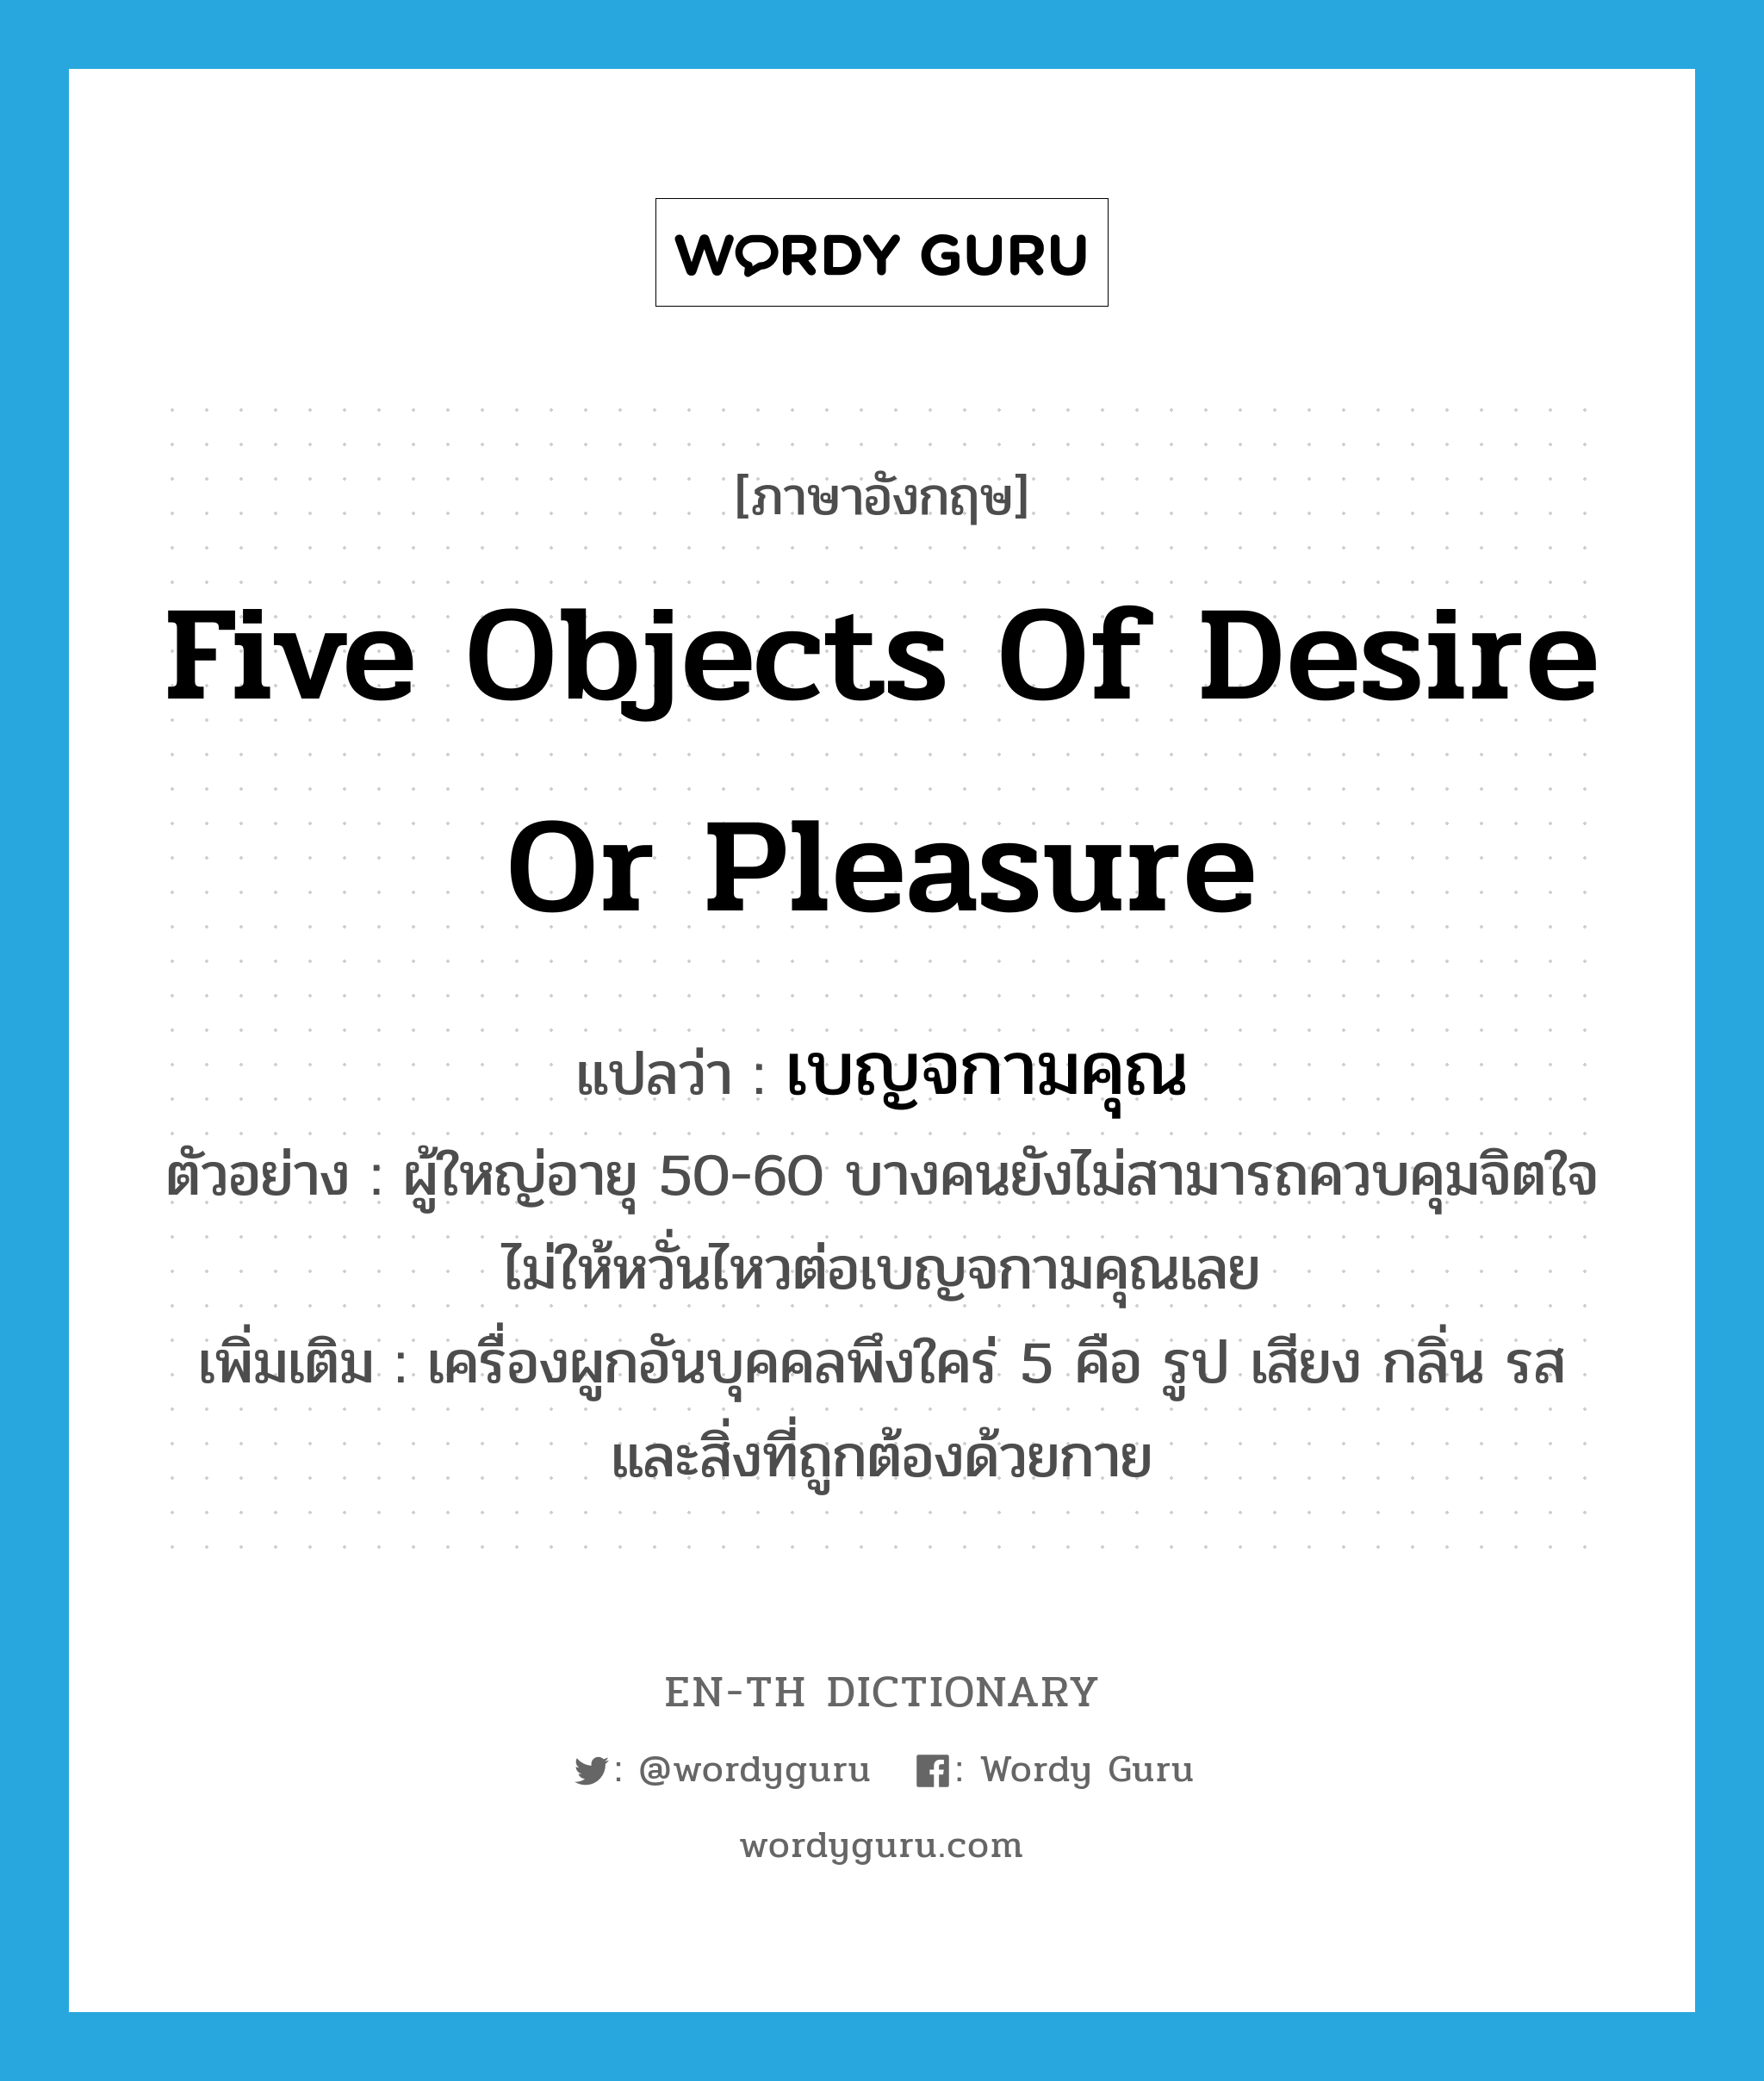 five objects of desire or pleasure แปลว่า?, คำศัพท์ภาษาอังกฤษ five objects of desire or pleasure แปลว่า เบญจกามคุณ ประเภท N ตัวอย่าง ผู้ใหญ่อายุ 50-60 บางคนยังไม่สามารถควบคุมจิตใจไม่ให้หวั่นไหวต่อเบญจกามคุณเลย เพิ่มเติม เครื่องผูกอันบุคคลพึงใคร่ 5 คือ รูป เสียง กลิ่น รส และสิ่งที่ถูกต้องด้วยกาย หมวด N